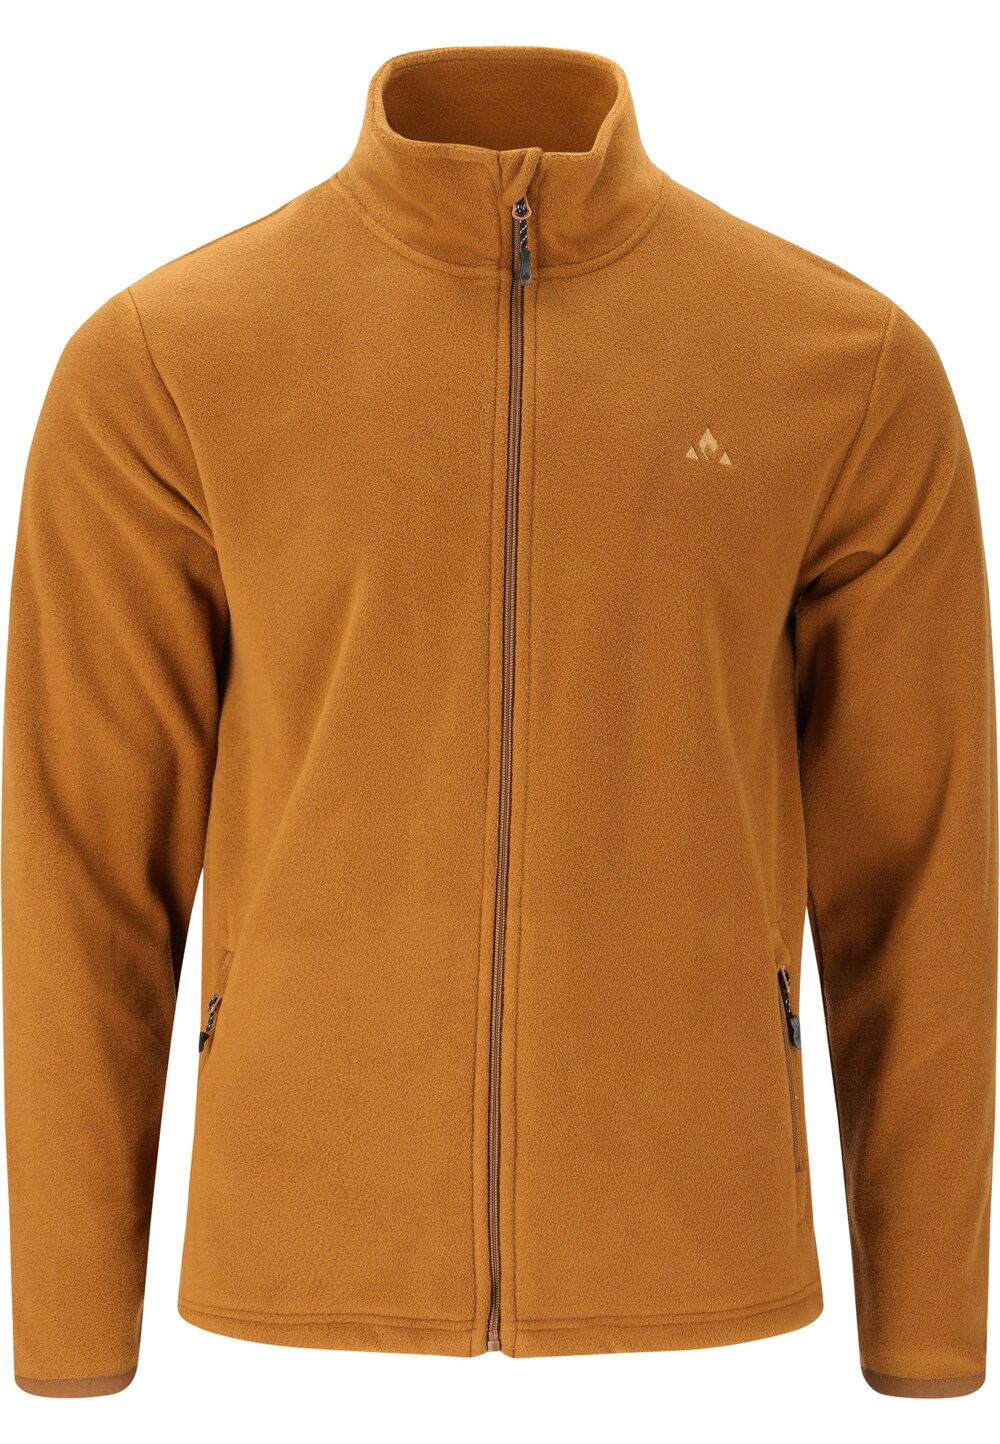 Спортивная флисовая куртка Whistler Cocoon, коричневый цена и фото